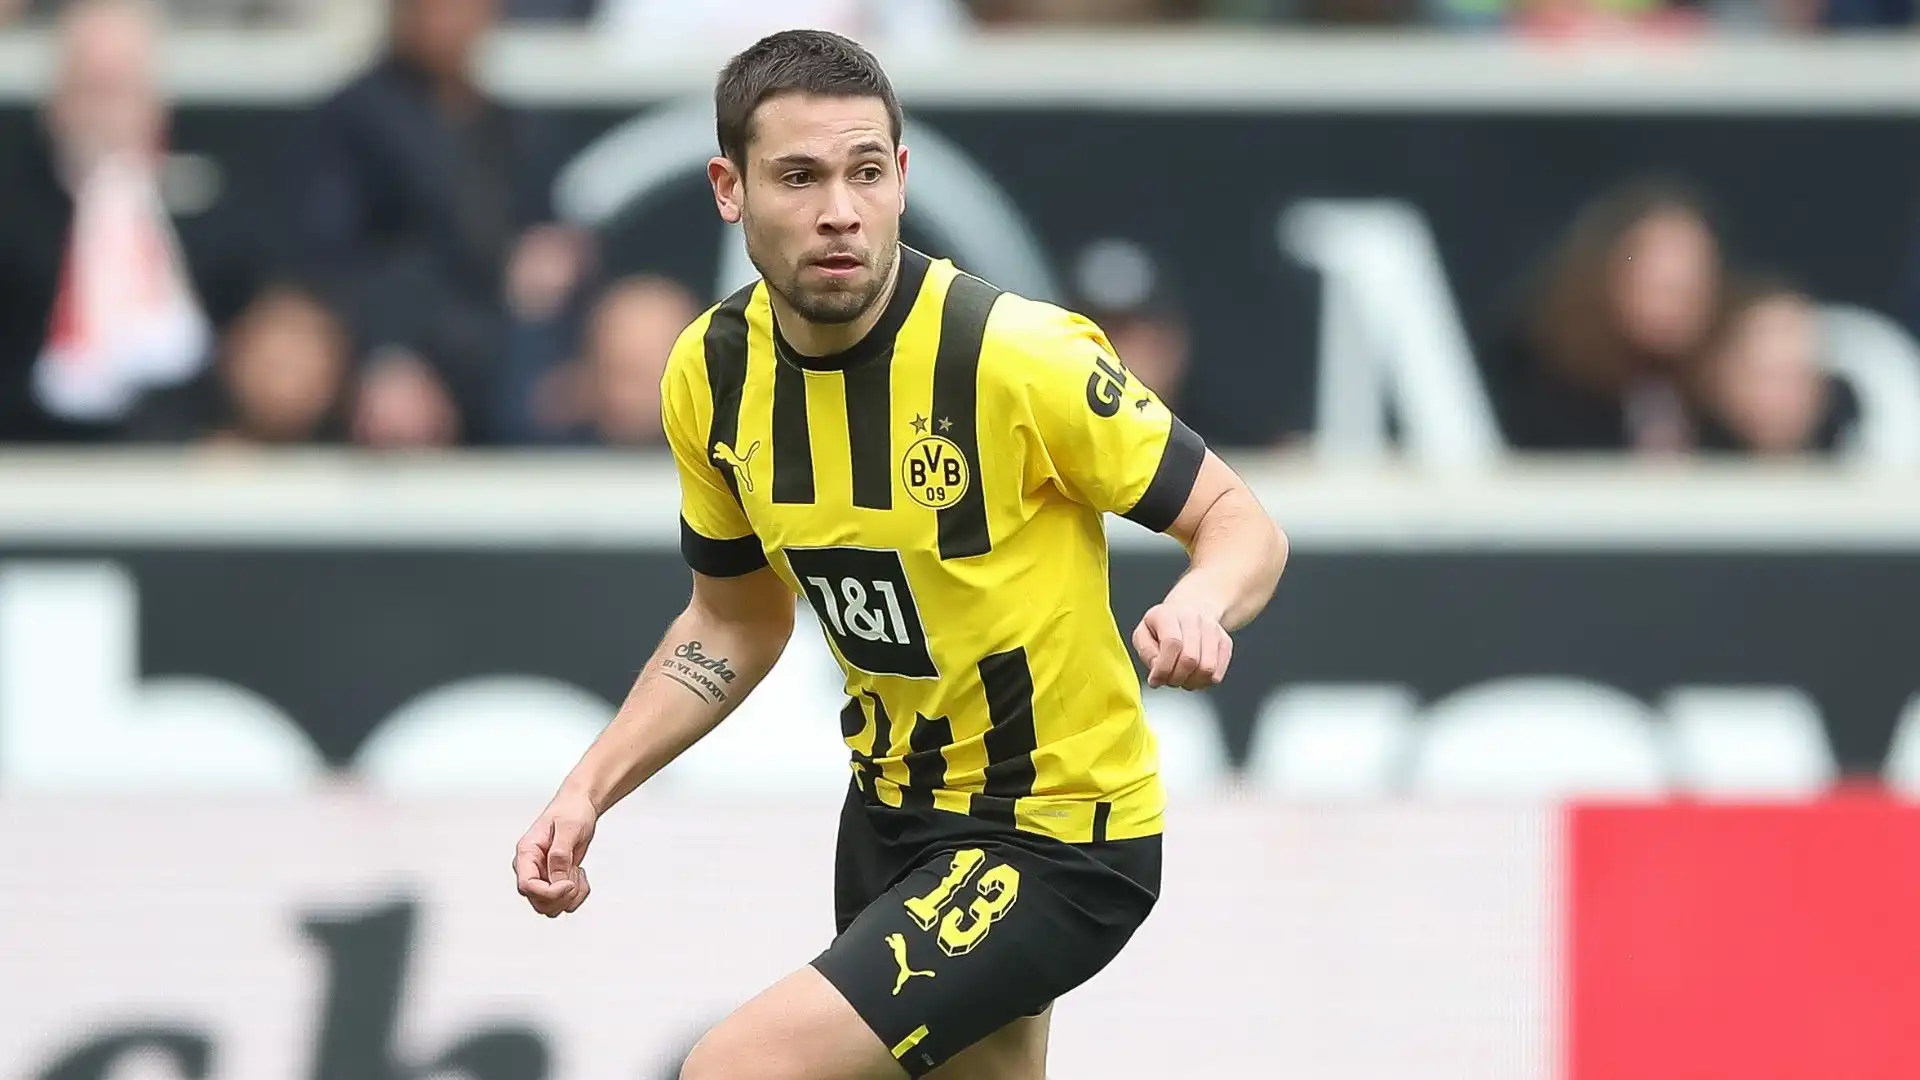 Il contratto del calciatore con il Borussia Dortmund scadrà a fine giugno, poi sarà libero di trasferirsi gratuitamente